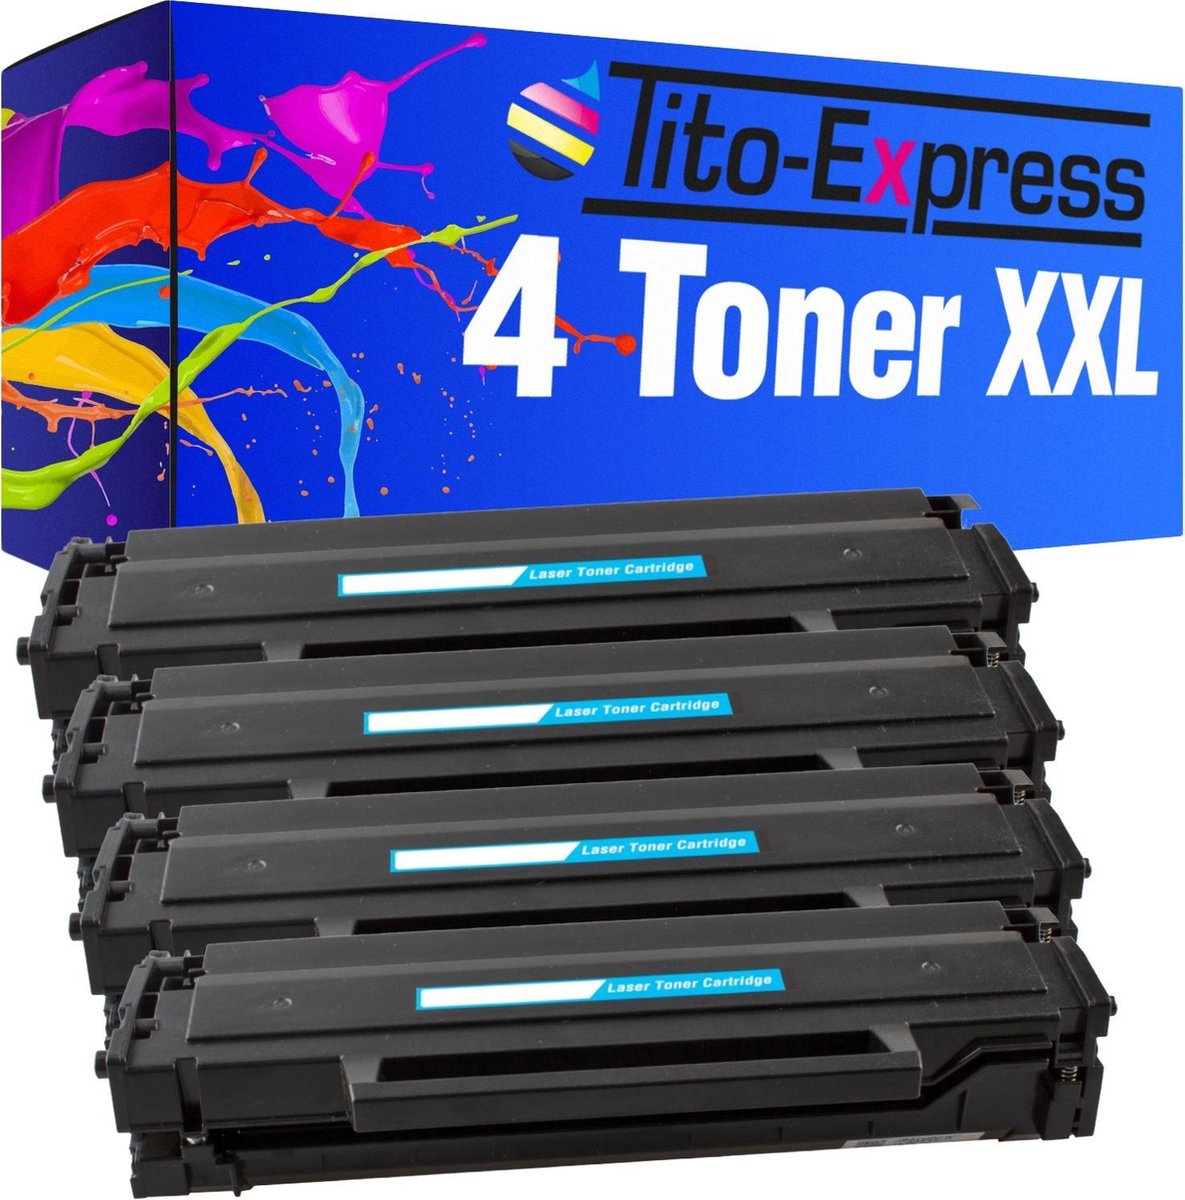 PlatinumSerie 4x Toner XXL alternatief voor HP CF294X - Tito-EXpress